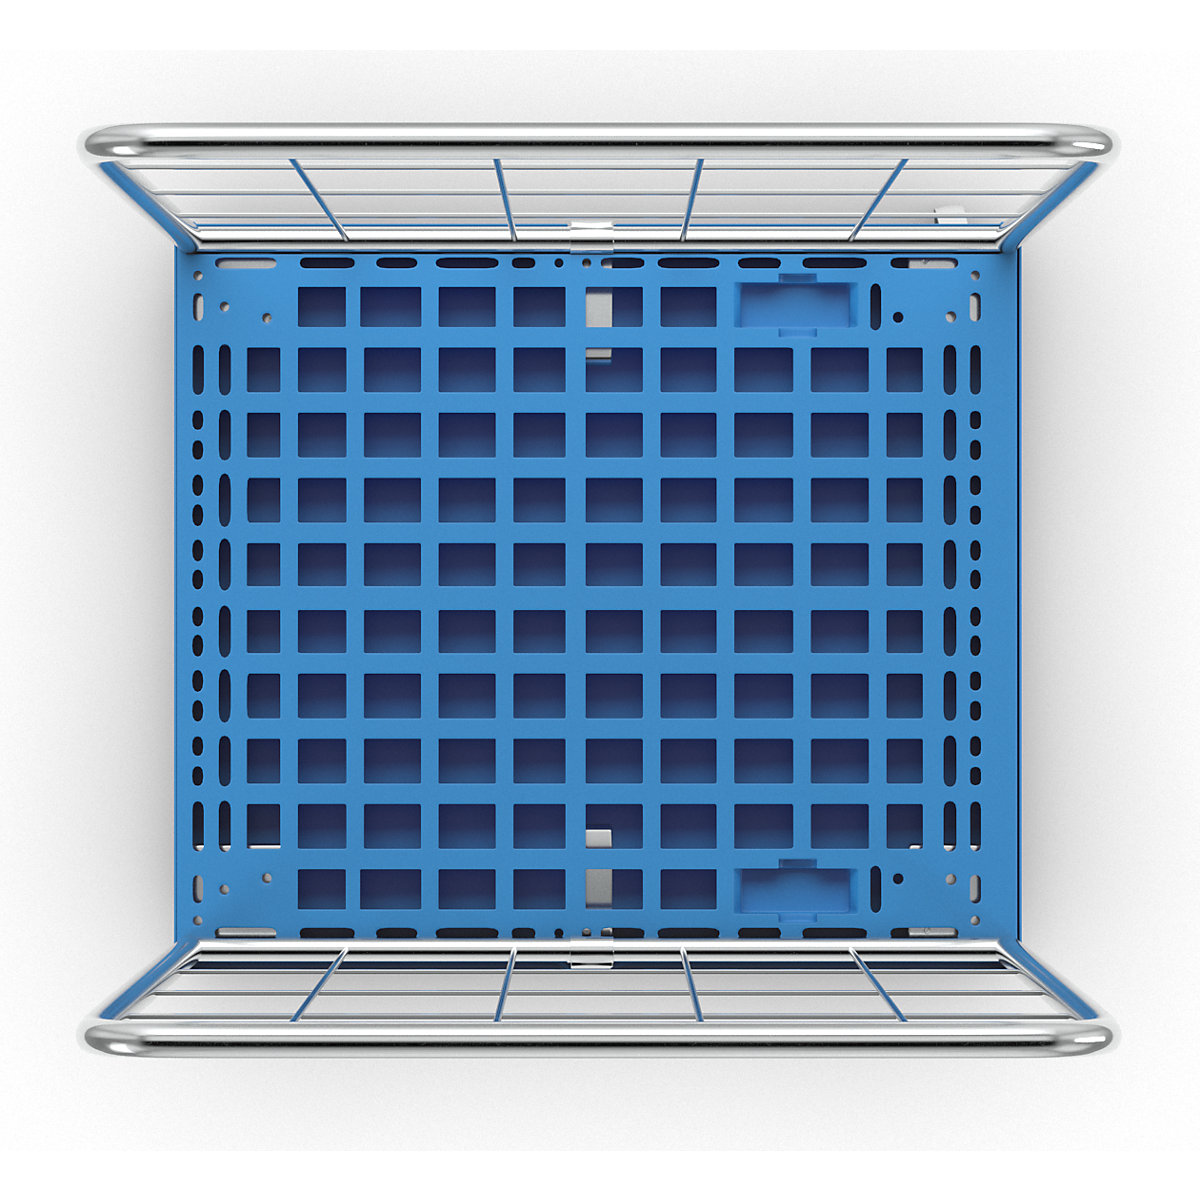 Rollbehälter mit Gitterwänden (Produktabbildung 3)-2